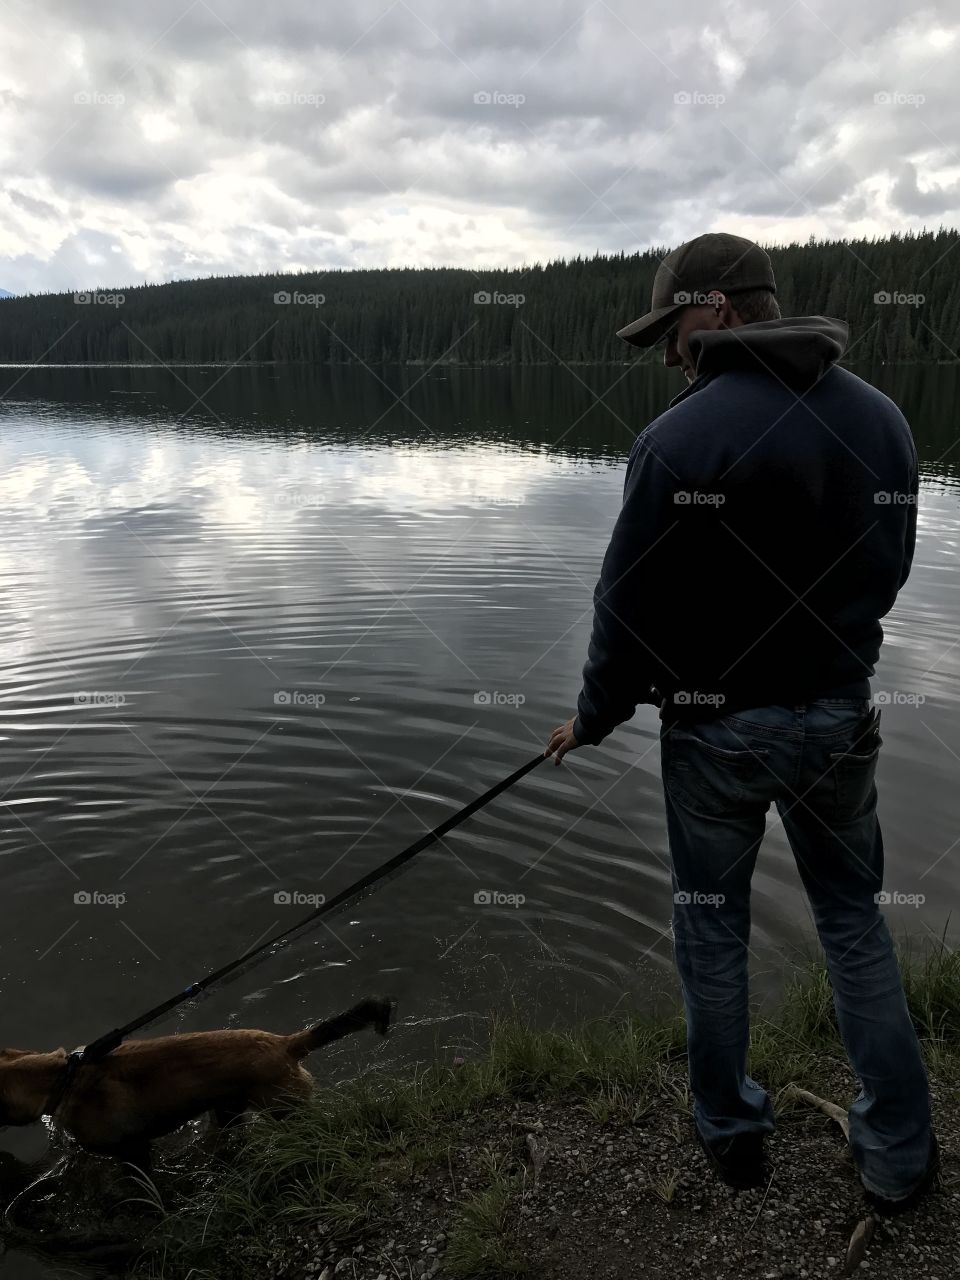 Lake, Fisherman, Fishing Rod, Water, River